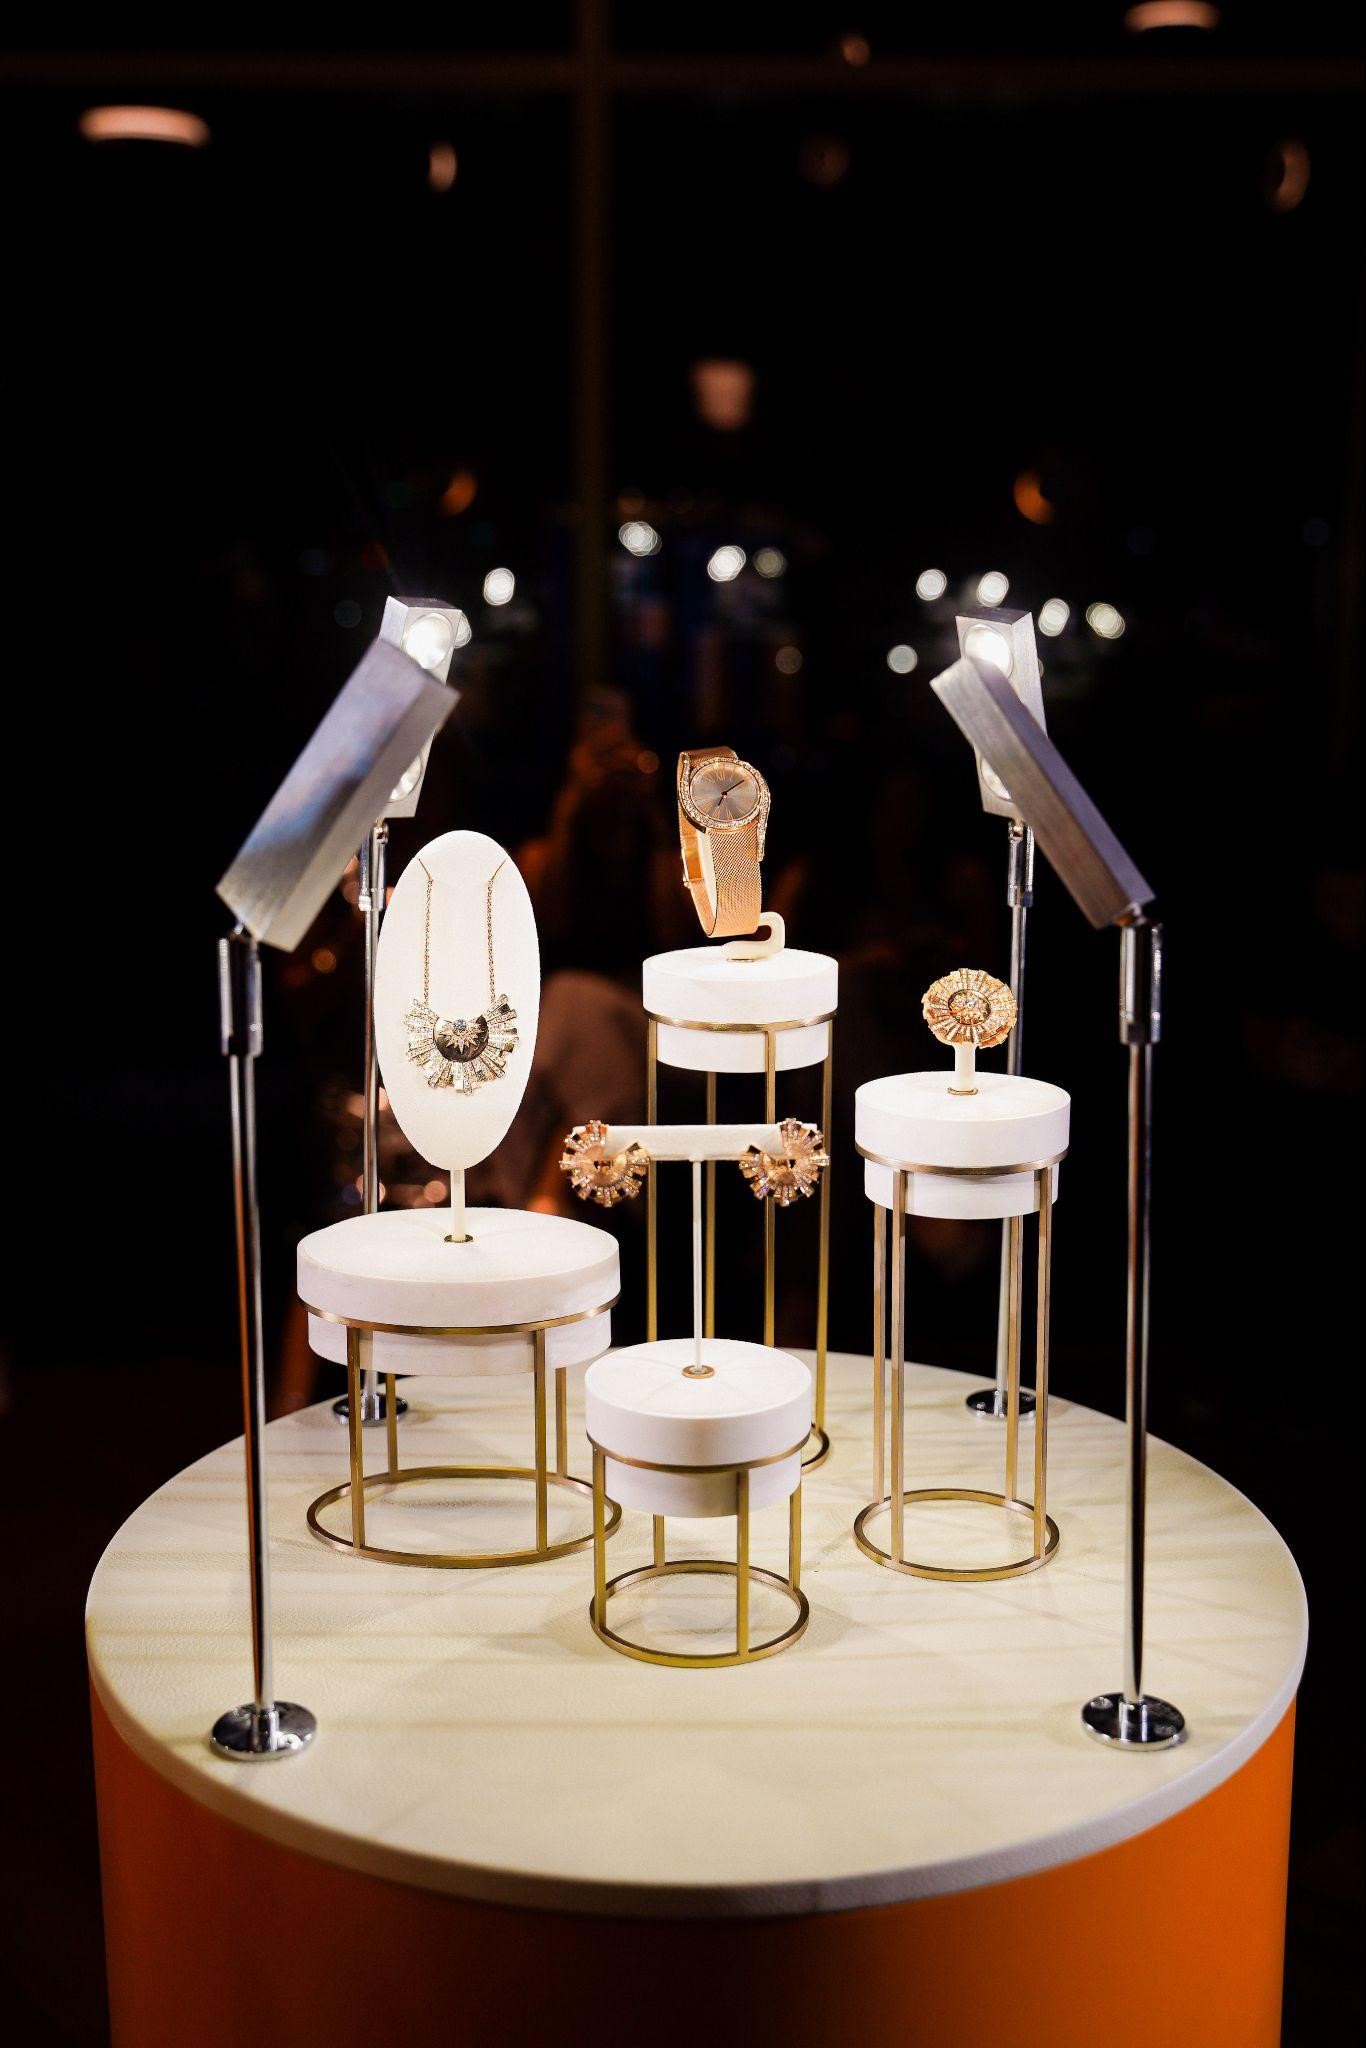 Đại hội mỹ nhân quy tụ tại sự kiện Piaget: Loạt trang sức lấp lánh, xa xỉ chiếm trọn spotlight - Ảnh 12.